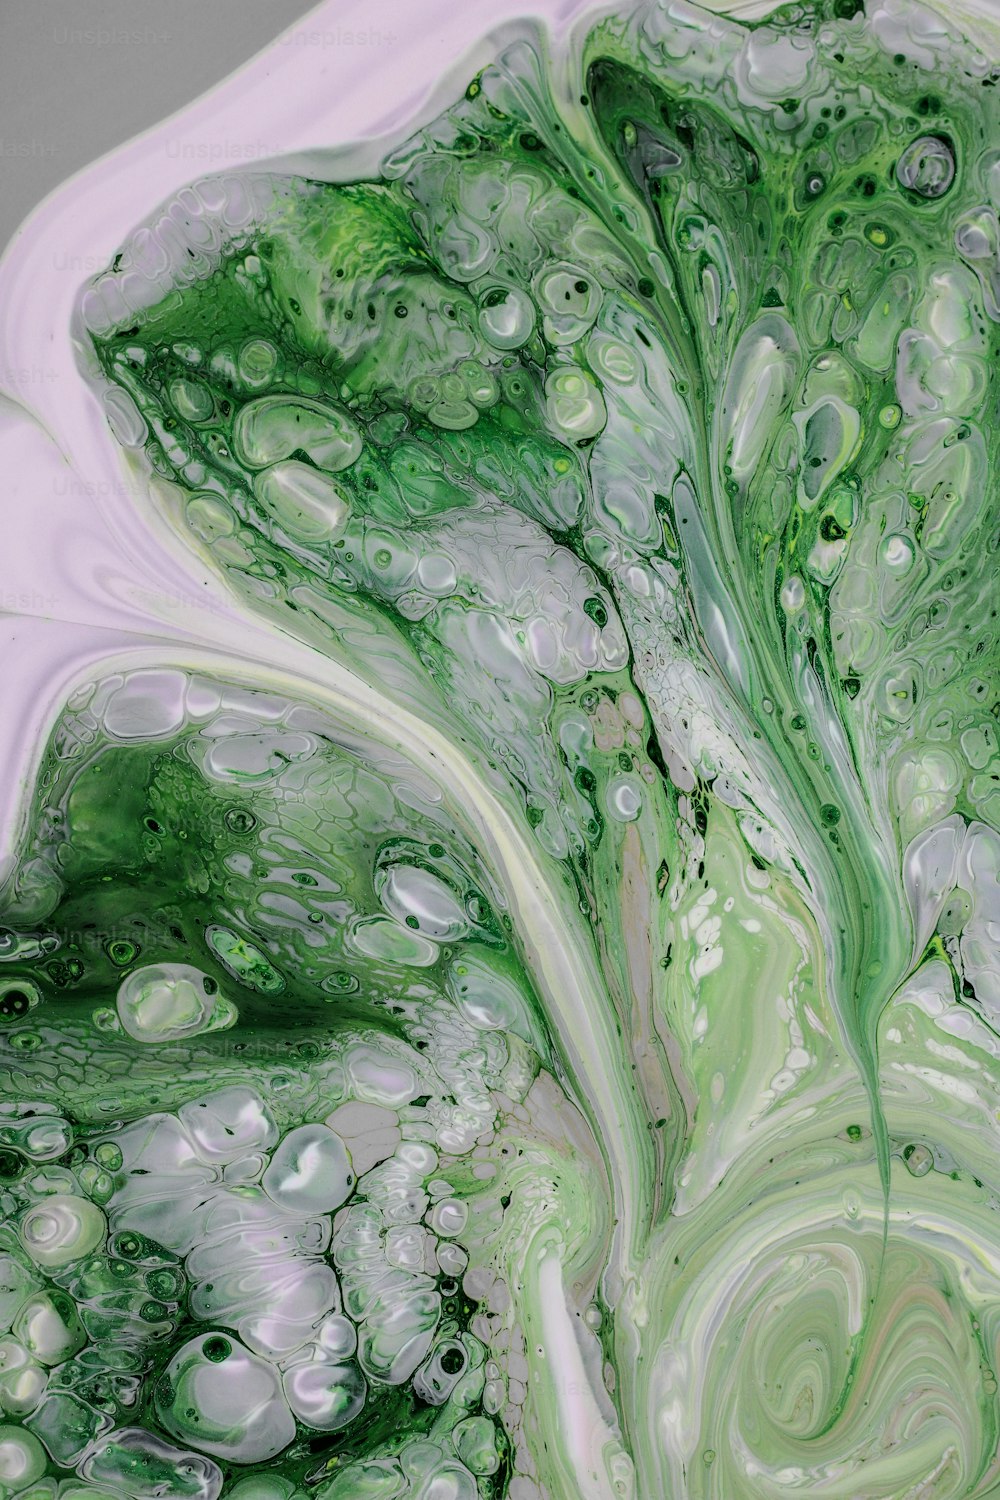 um close up de um líquido verde e branco